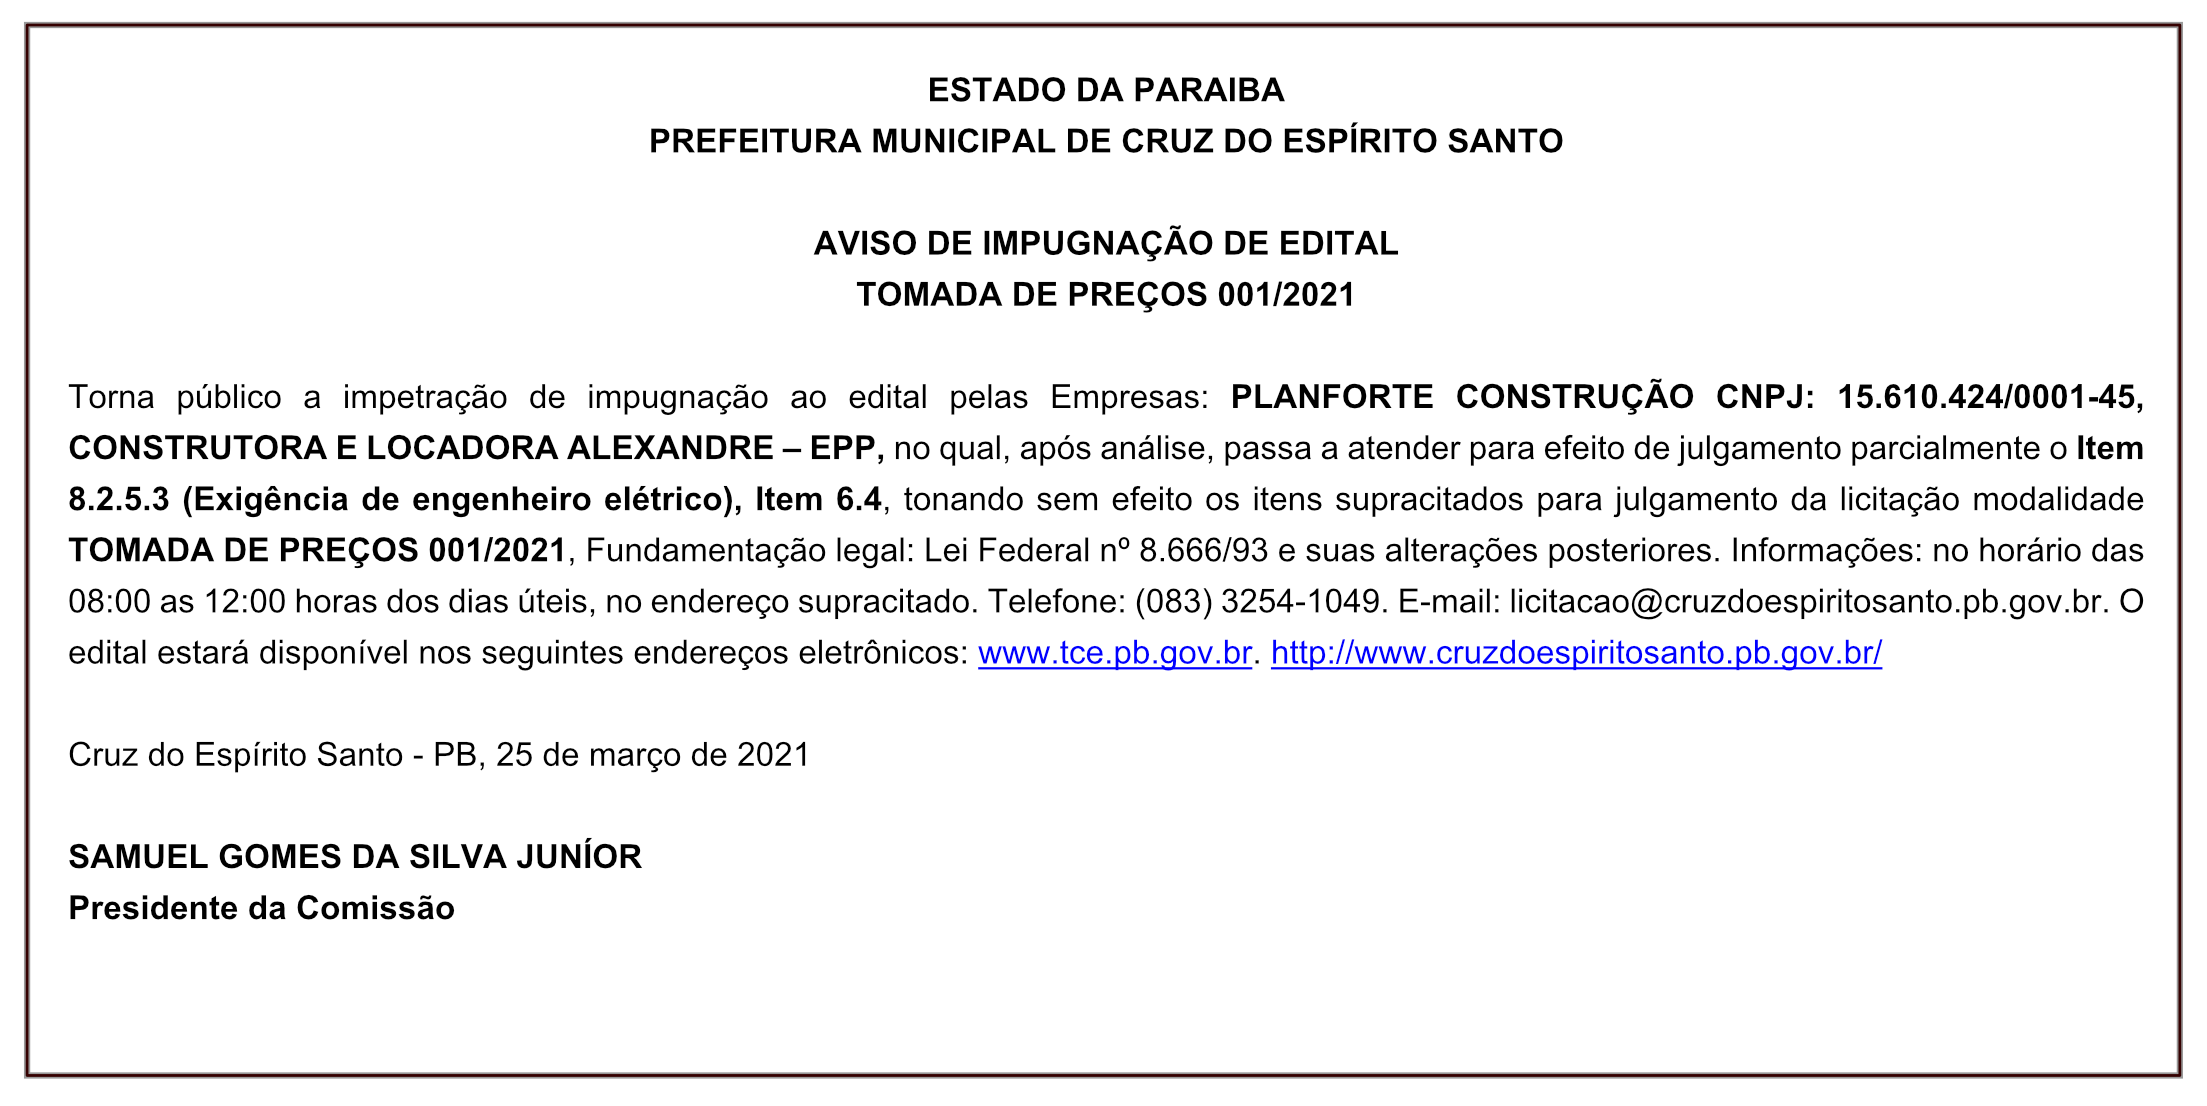 PREFEITURA MUNICIPAL DE CRUZ DO ESPÍRITO SANTO – AVISO DE IMPUGNAÇÃO DE EDITAL – TOMADA DE PREÇOS 001/2021